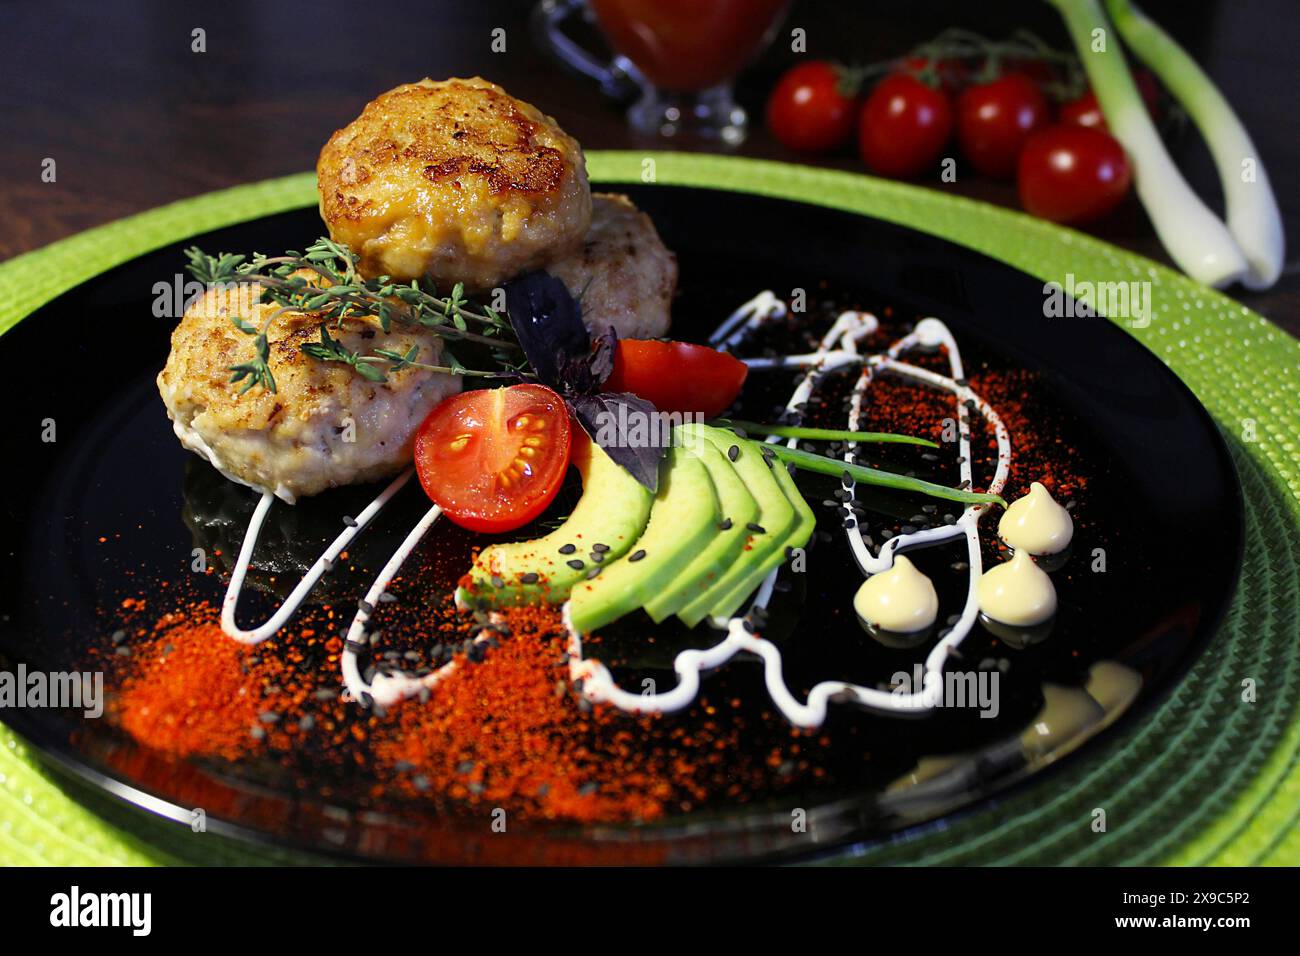 Présentation gastronomique avec des galettes de viande, des tomates, des avocats et des herbes disposées de manière créative sur une assiette noire avec des filets de sauce artistiques Banque D'Images